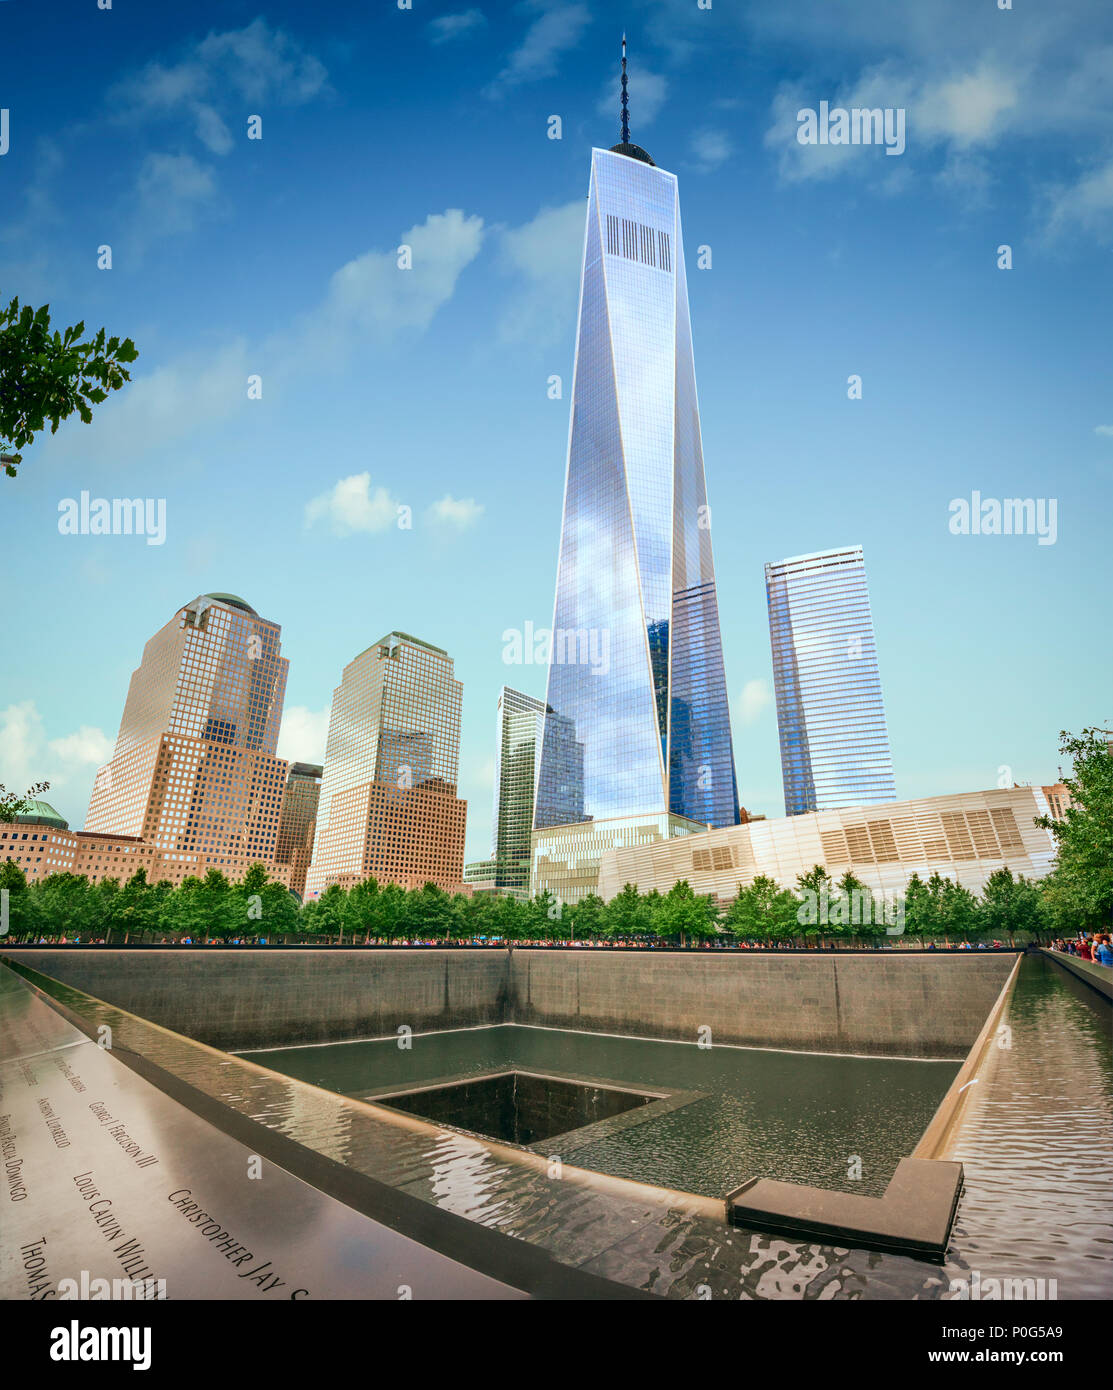 En el primer plano el monumento a las víctimas de la tragedia de 9/11 y en el fondo el nuevo World Trade Center se eleva de manera desafiante Foto de stock